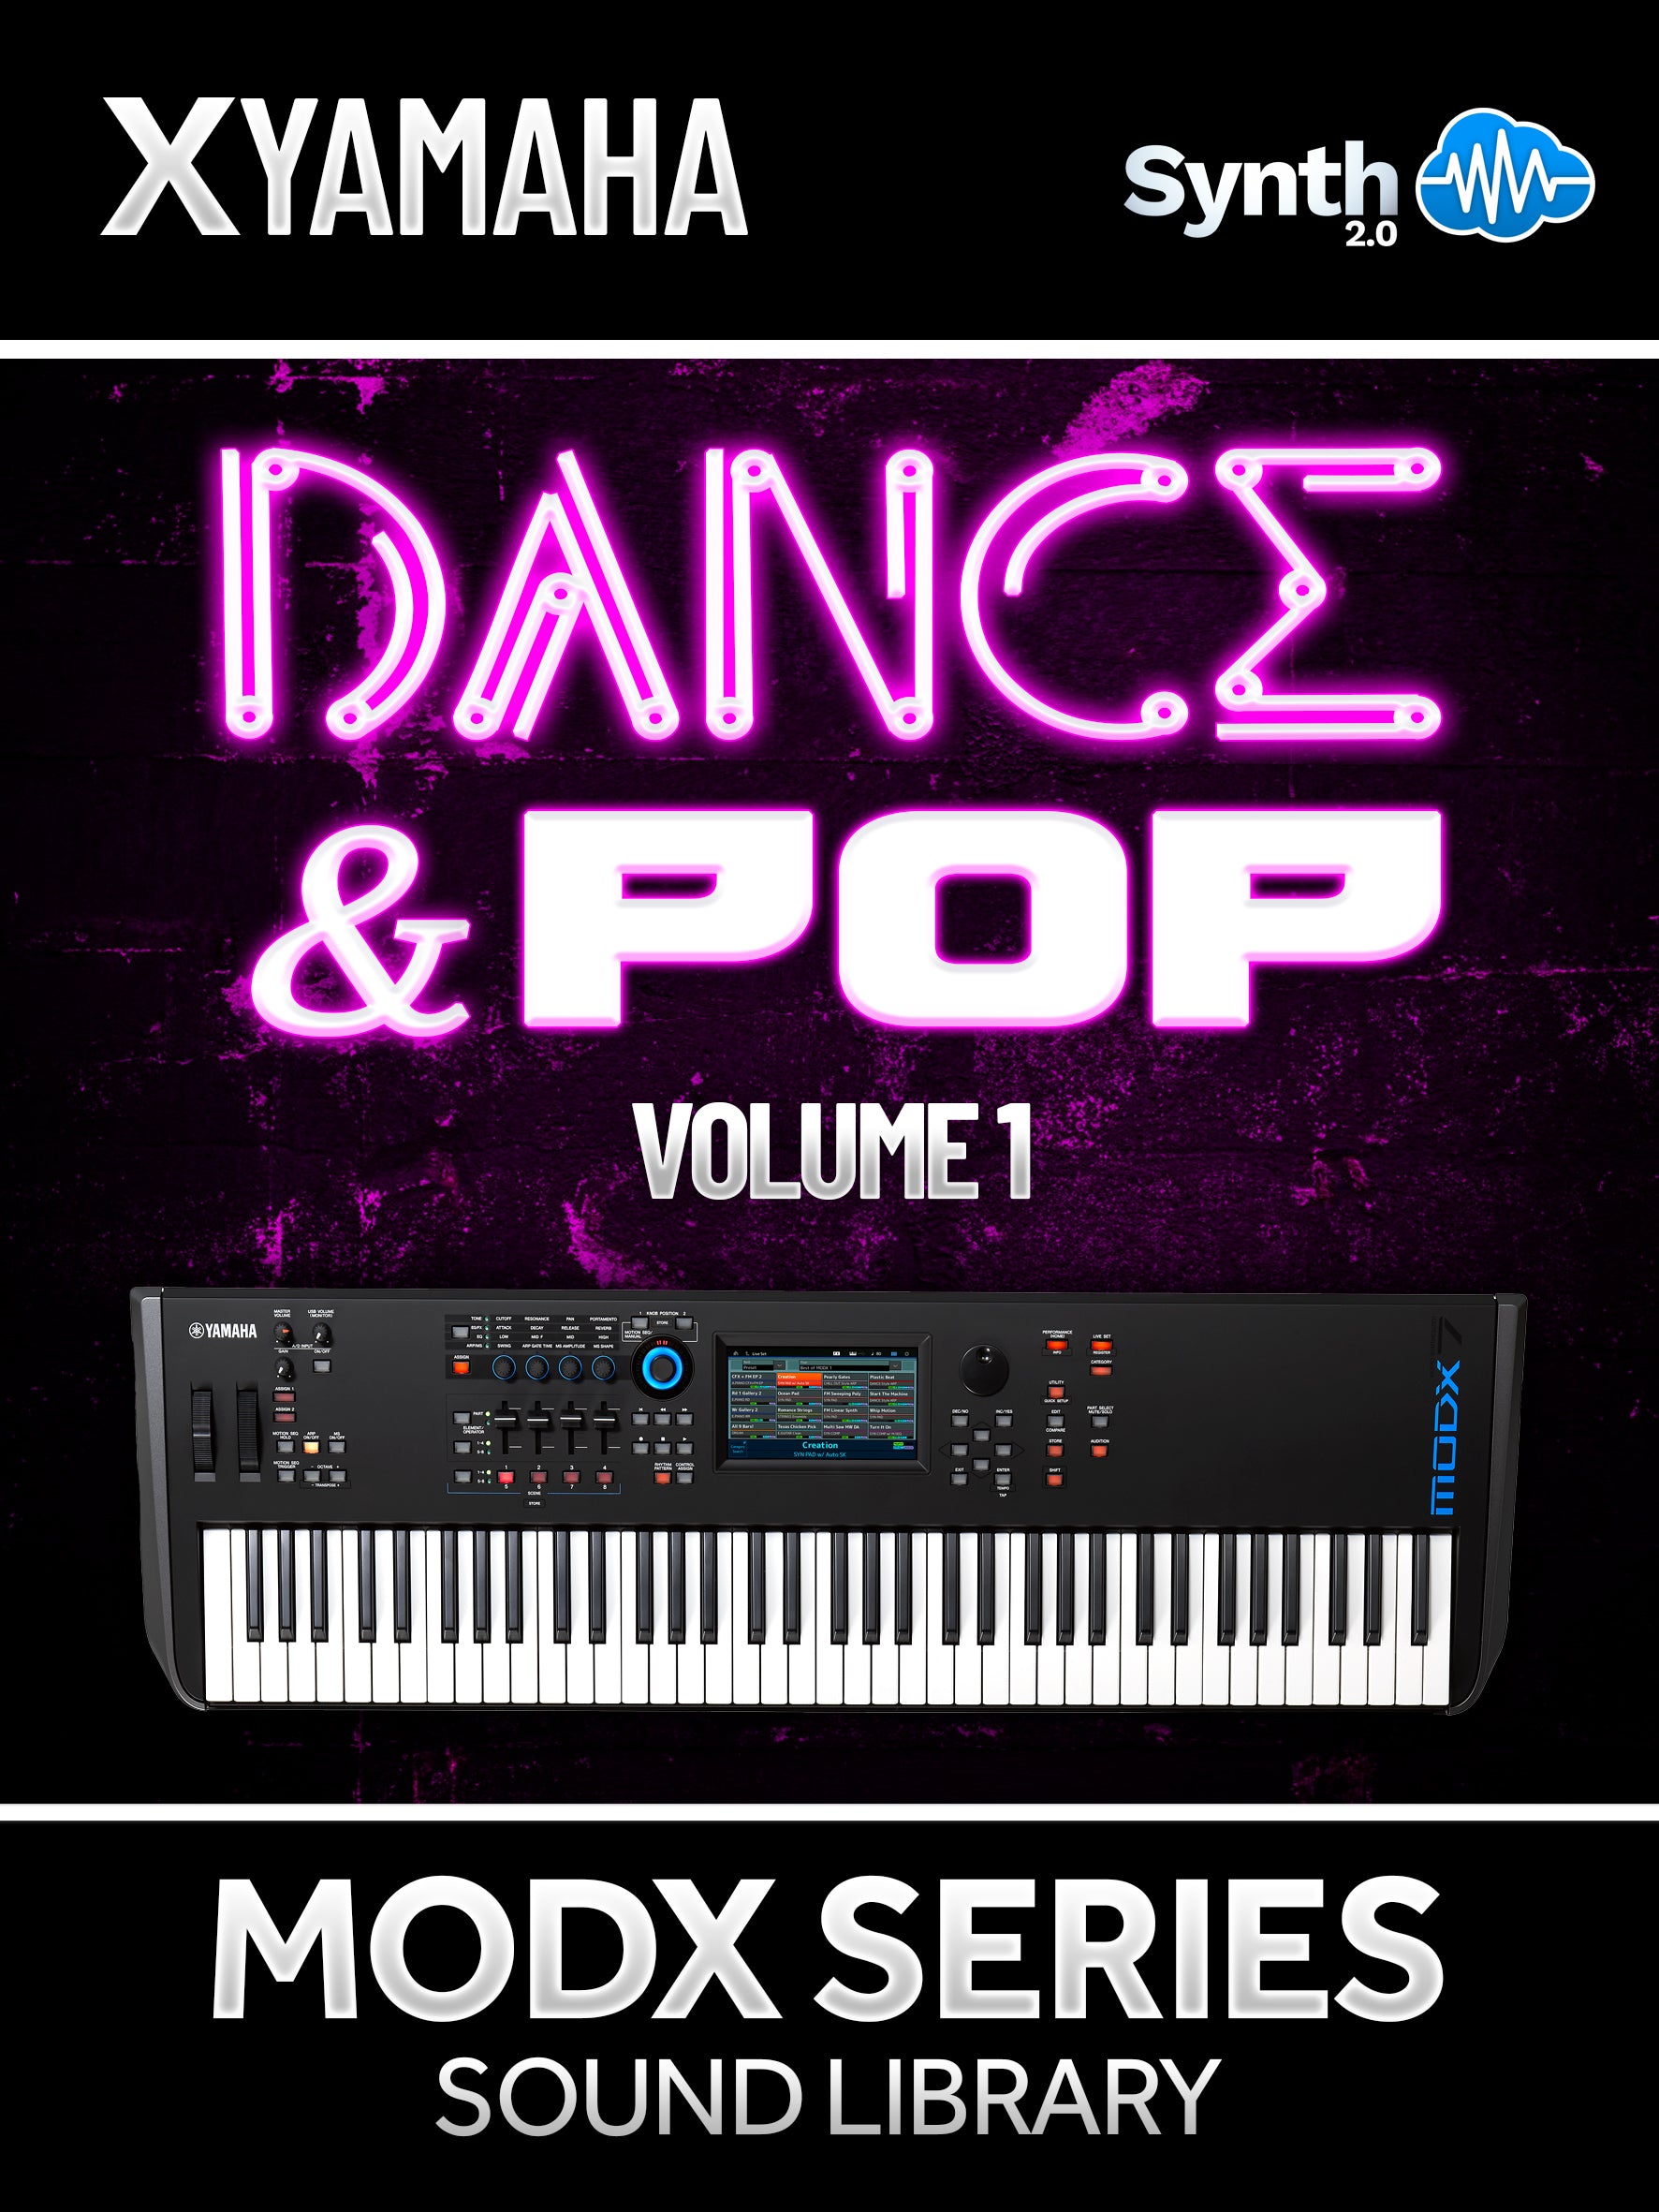 SCL018 - ( Bundle ) - Dance & Pop Vol.1 + Dance Hits - Yamaha MODX / MODX+